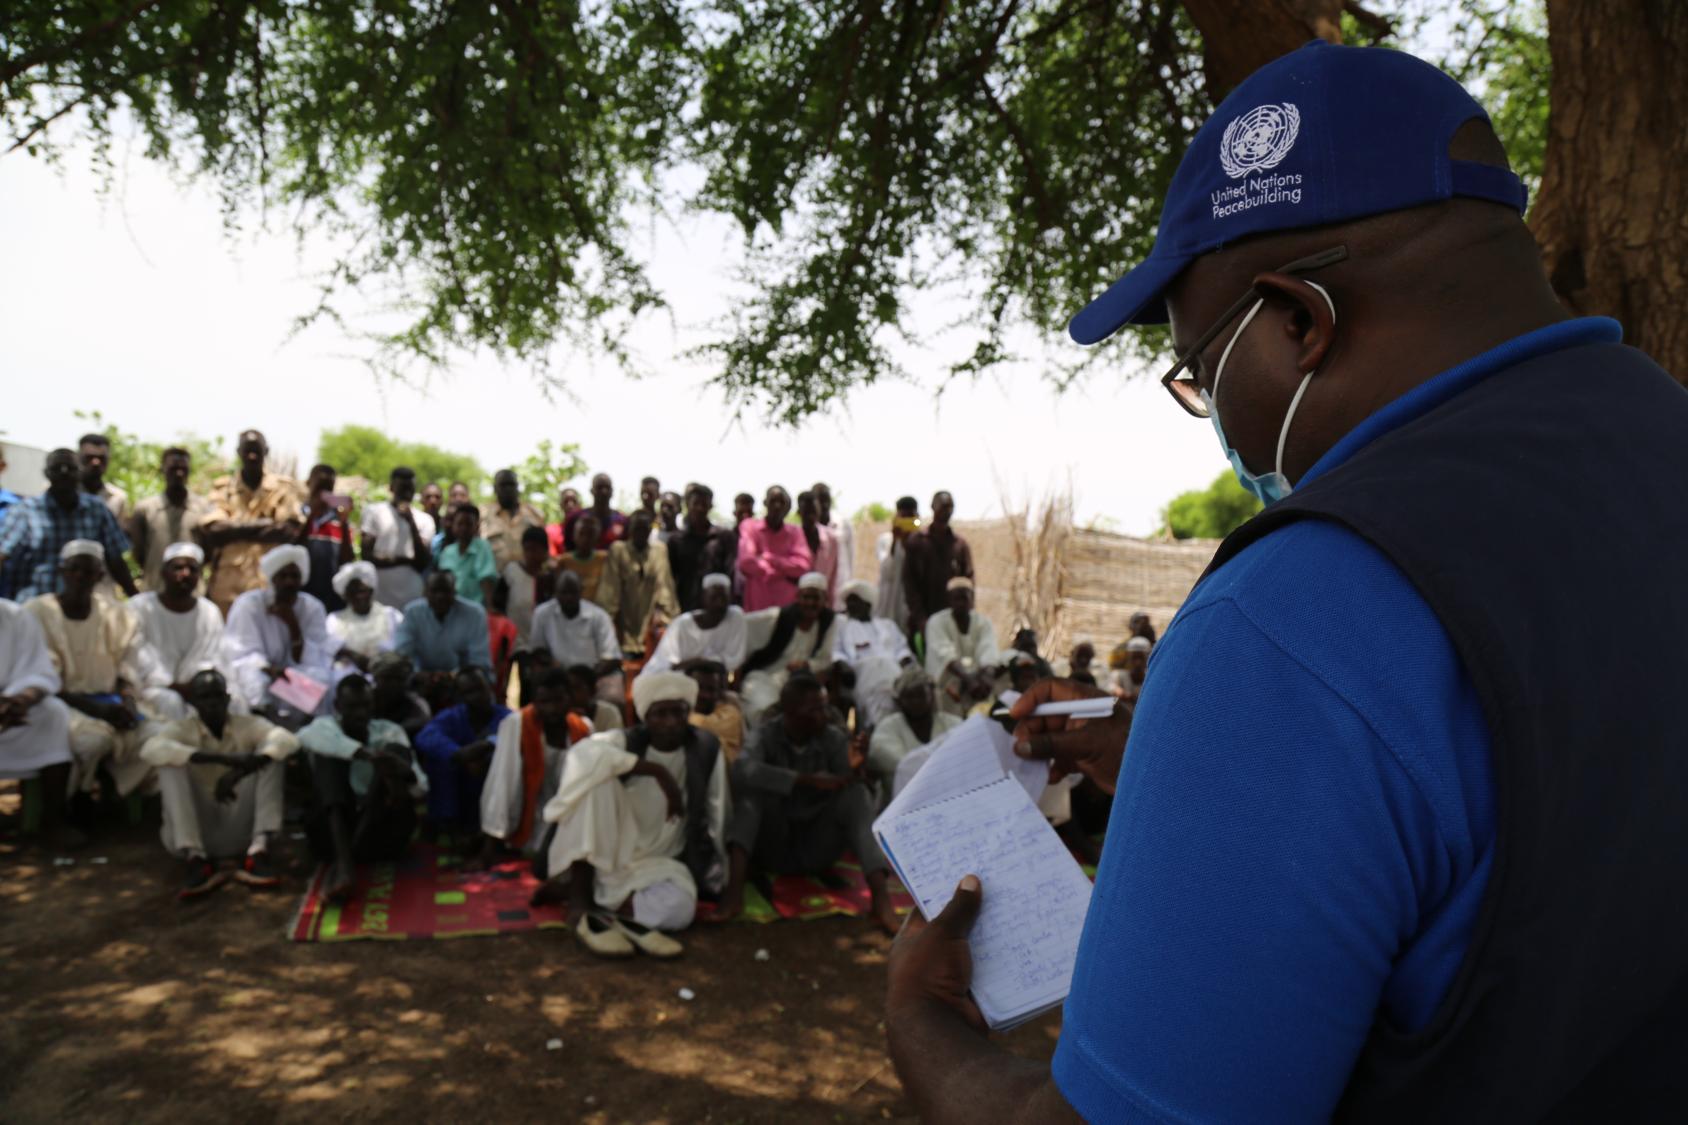 يتحدث أحد موظفي الأمم المتحدة لحفظ السلام مع مجموعة من المستفيدين من المشروع في شرق دارفور.